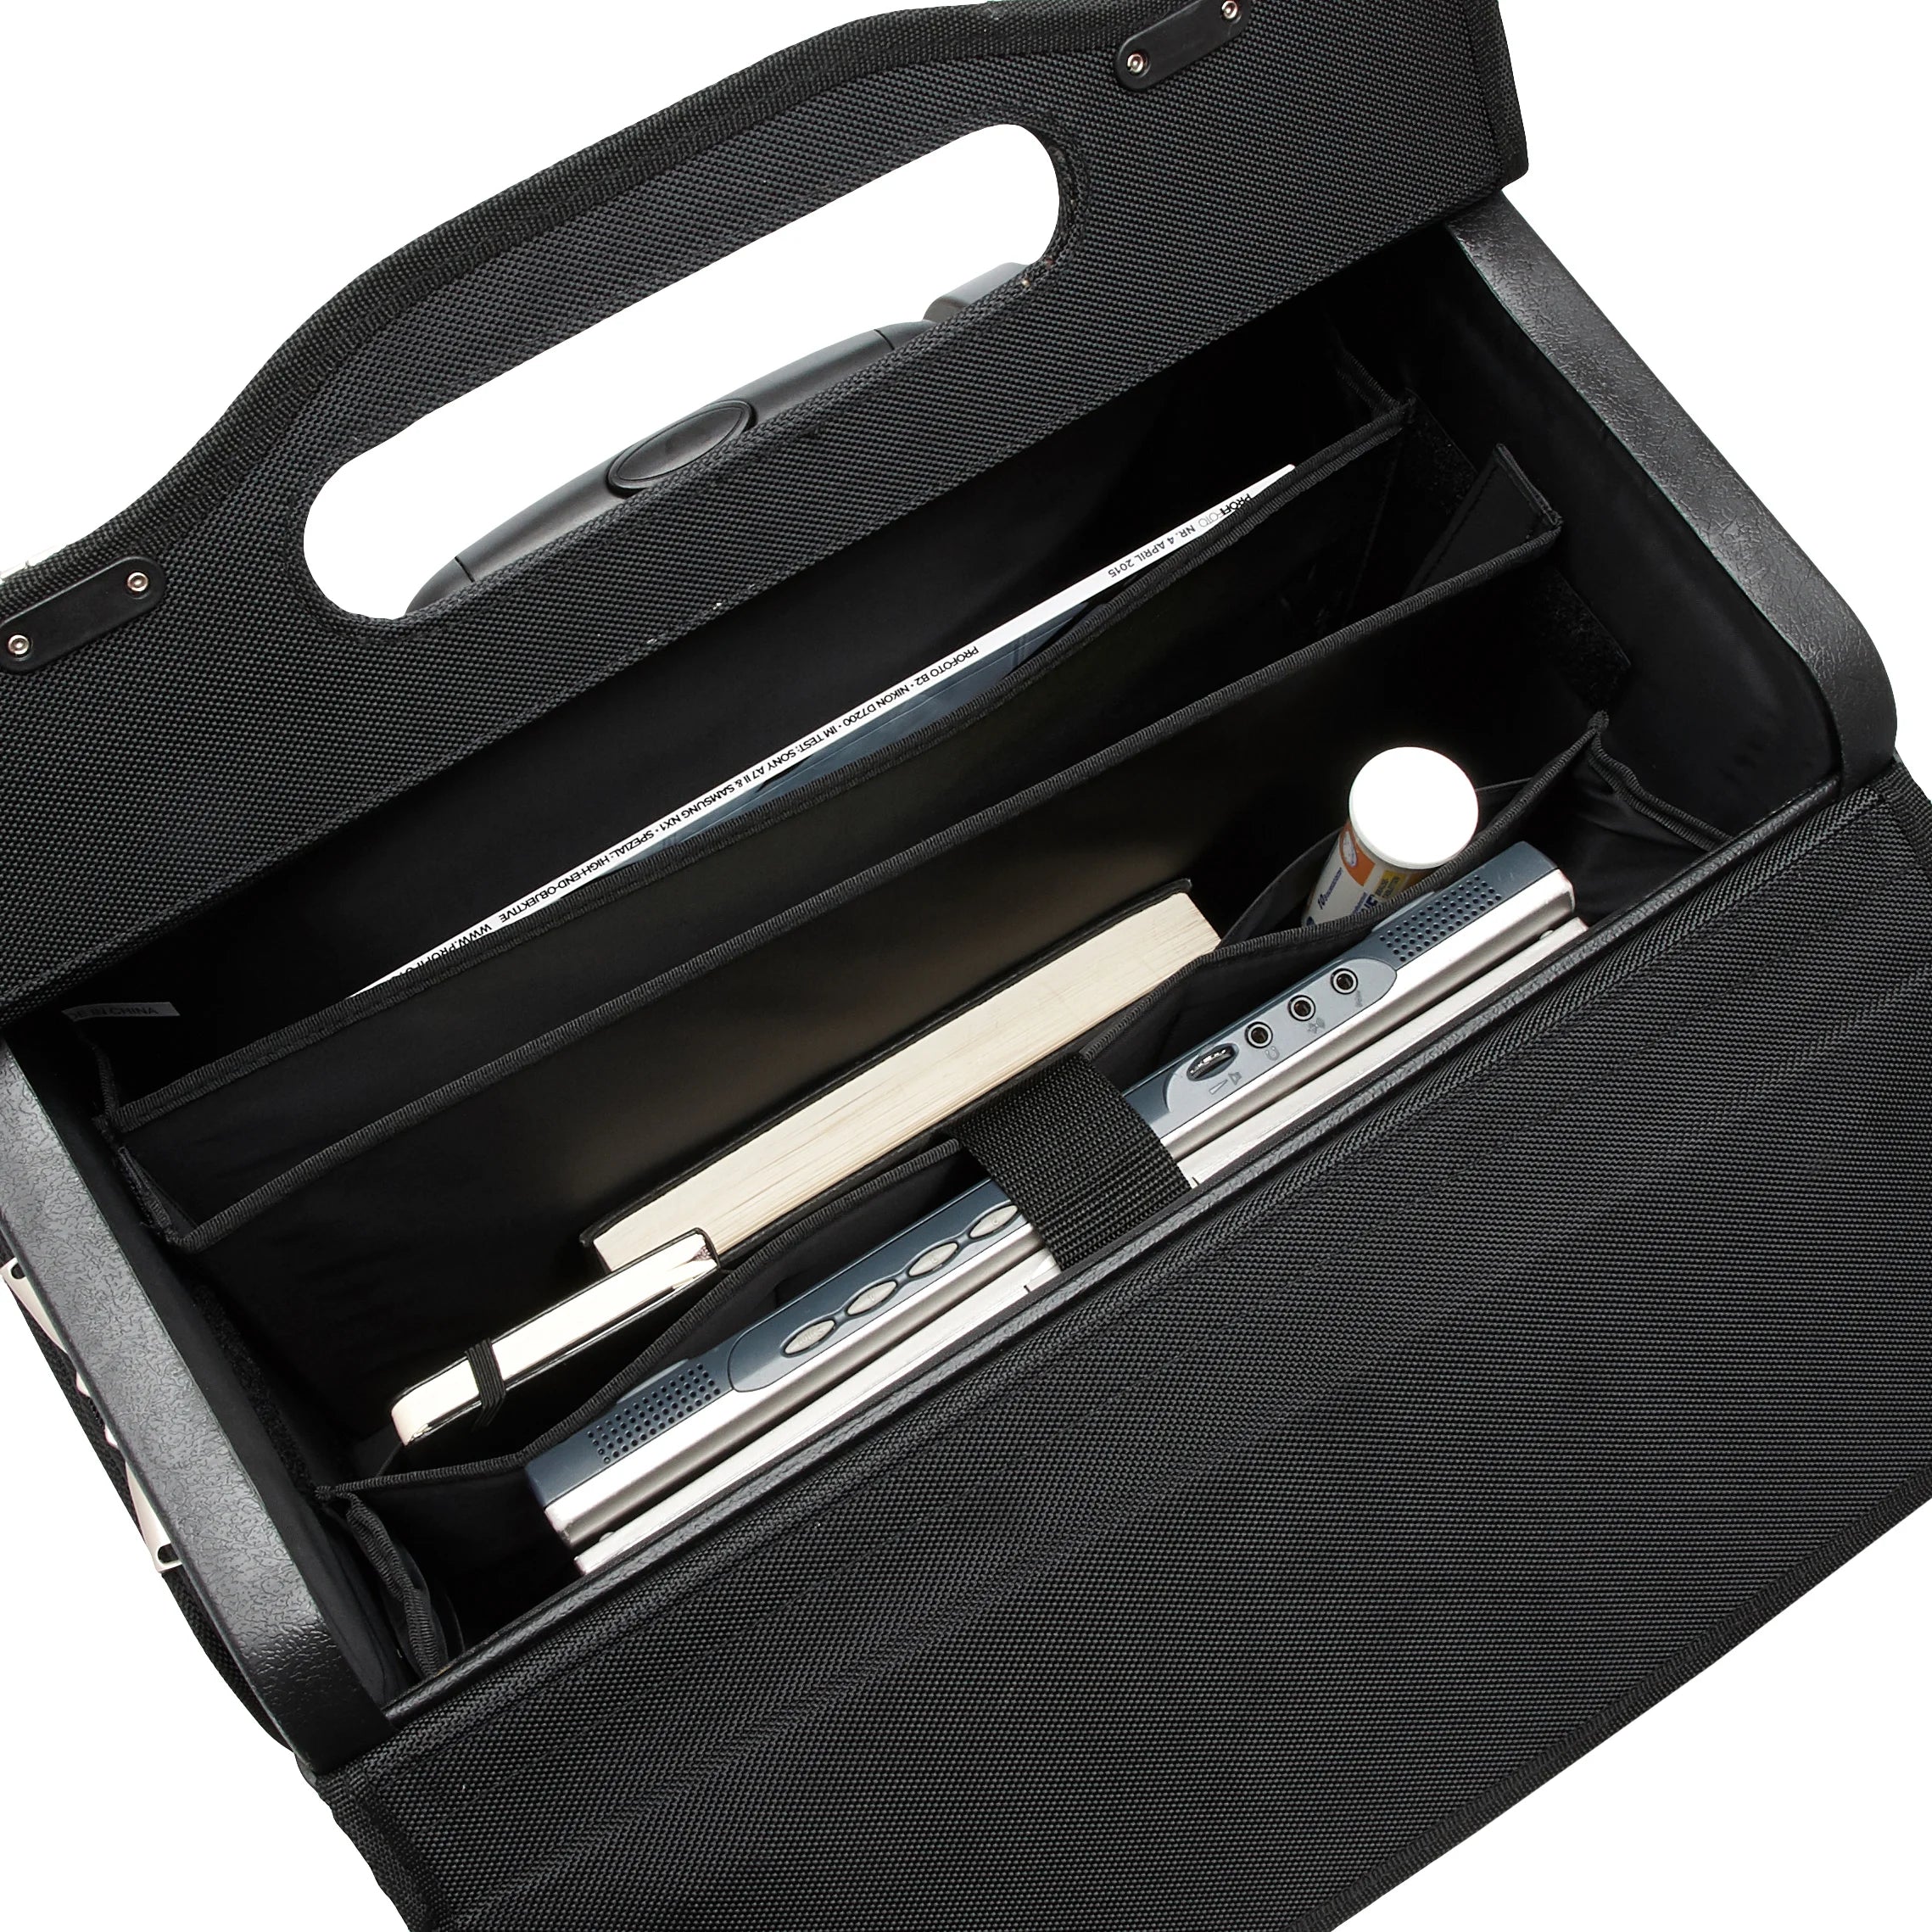 d&amp;n Business &amp; Travel valise pilote à roulettes 46 cm - noir